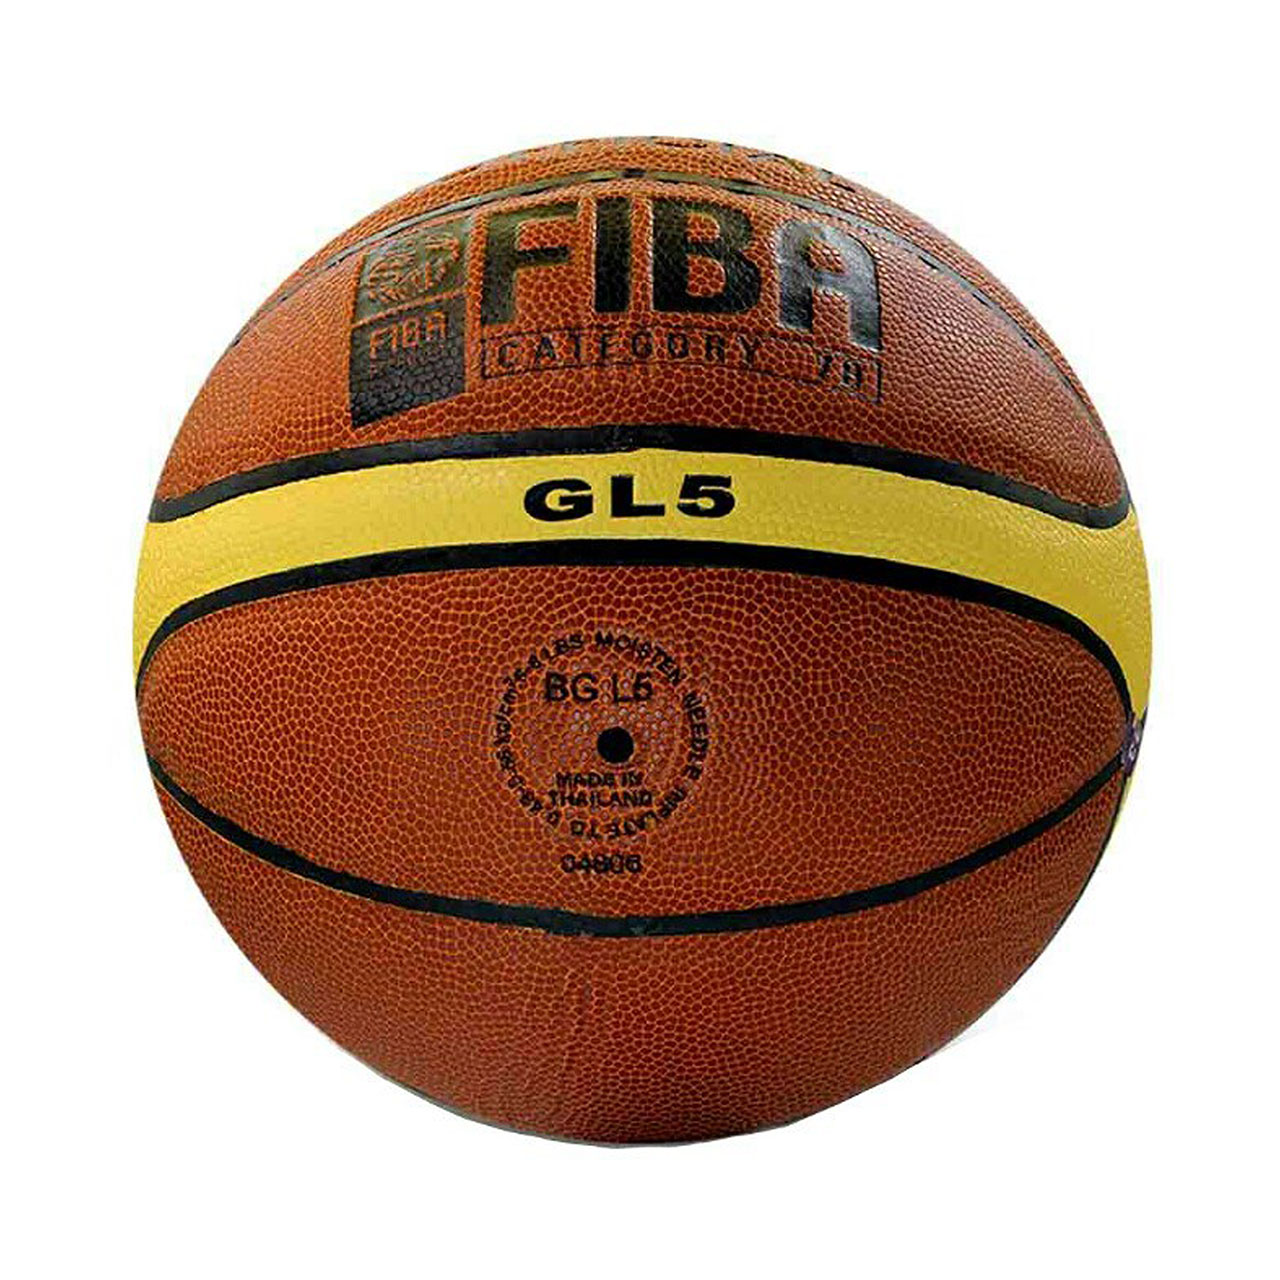 توپ بسکتبال مدل GL5 سایز 5